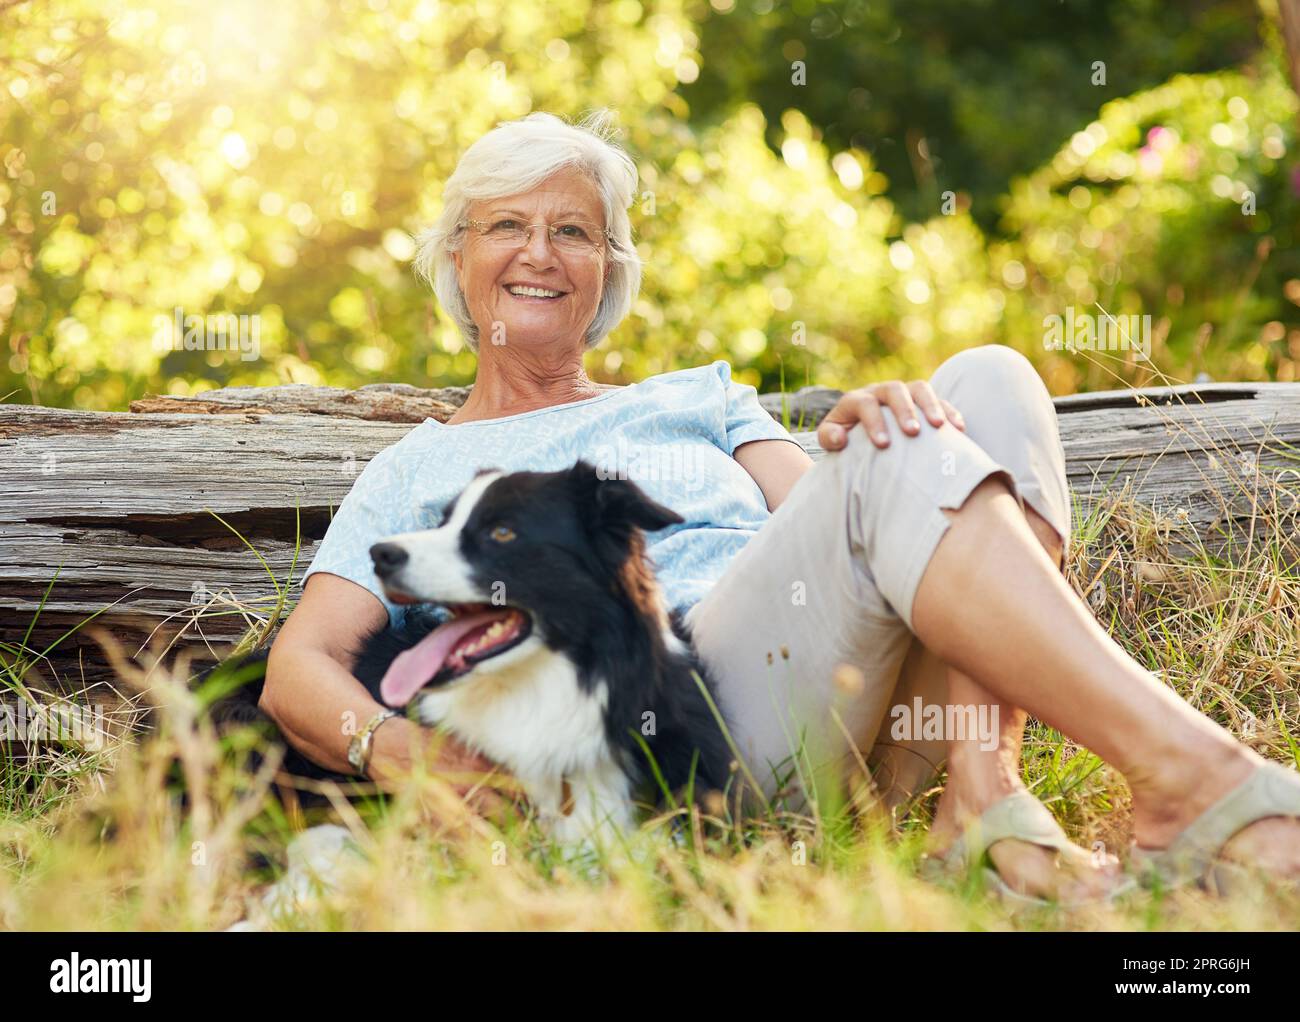 Le meilleur thérapeute a quatre jambes et une queue. Portrait d'une femme âgée heureuse qui se détend dans un parc avec son chien. Banque D'Images